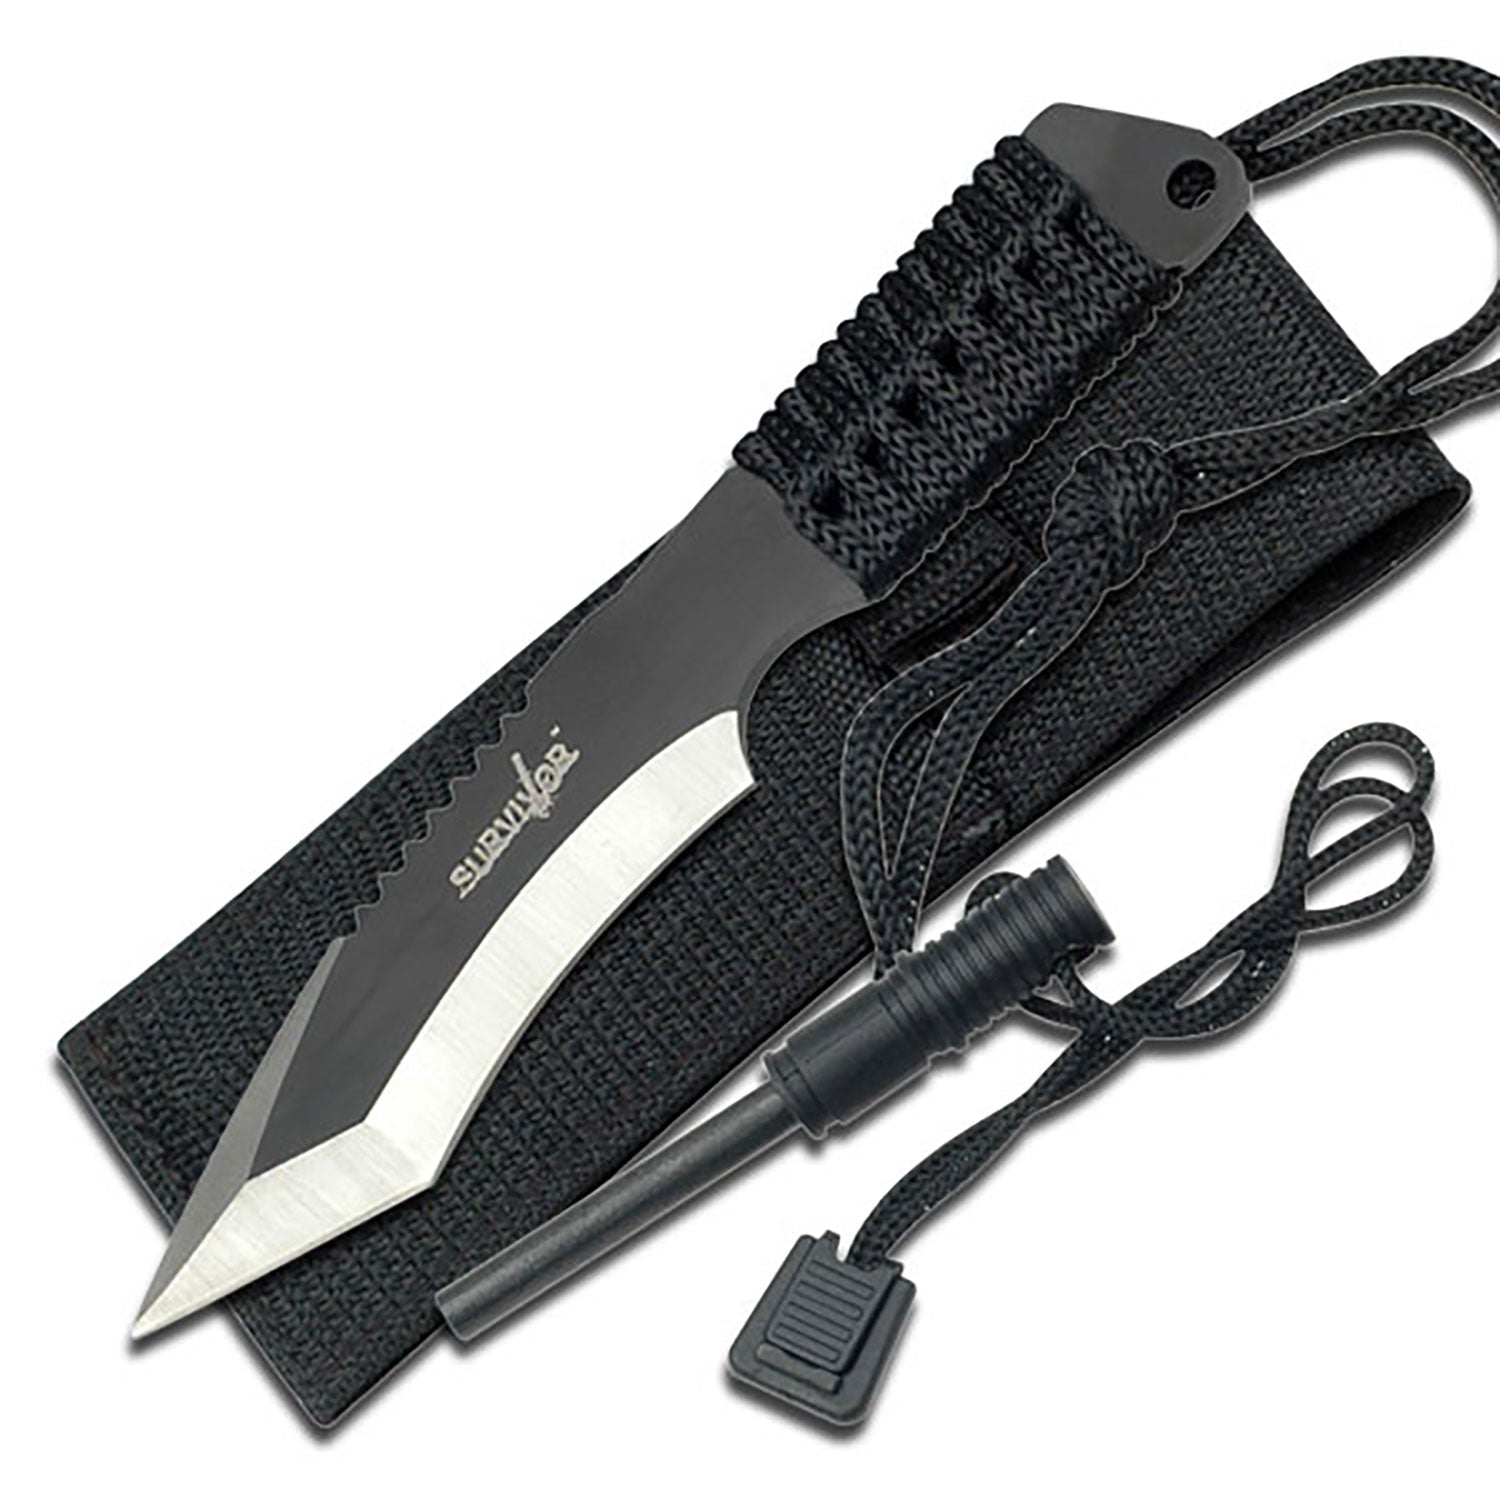 Bellissimo coltello Survivor con acciarino SURVIVOR HK-759 FIXED BLADE KNIFE 7" OVERALL